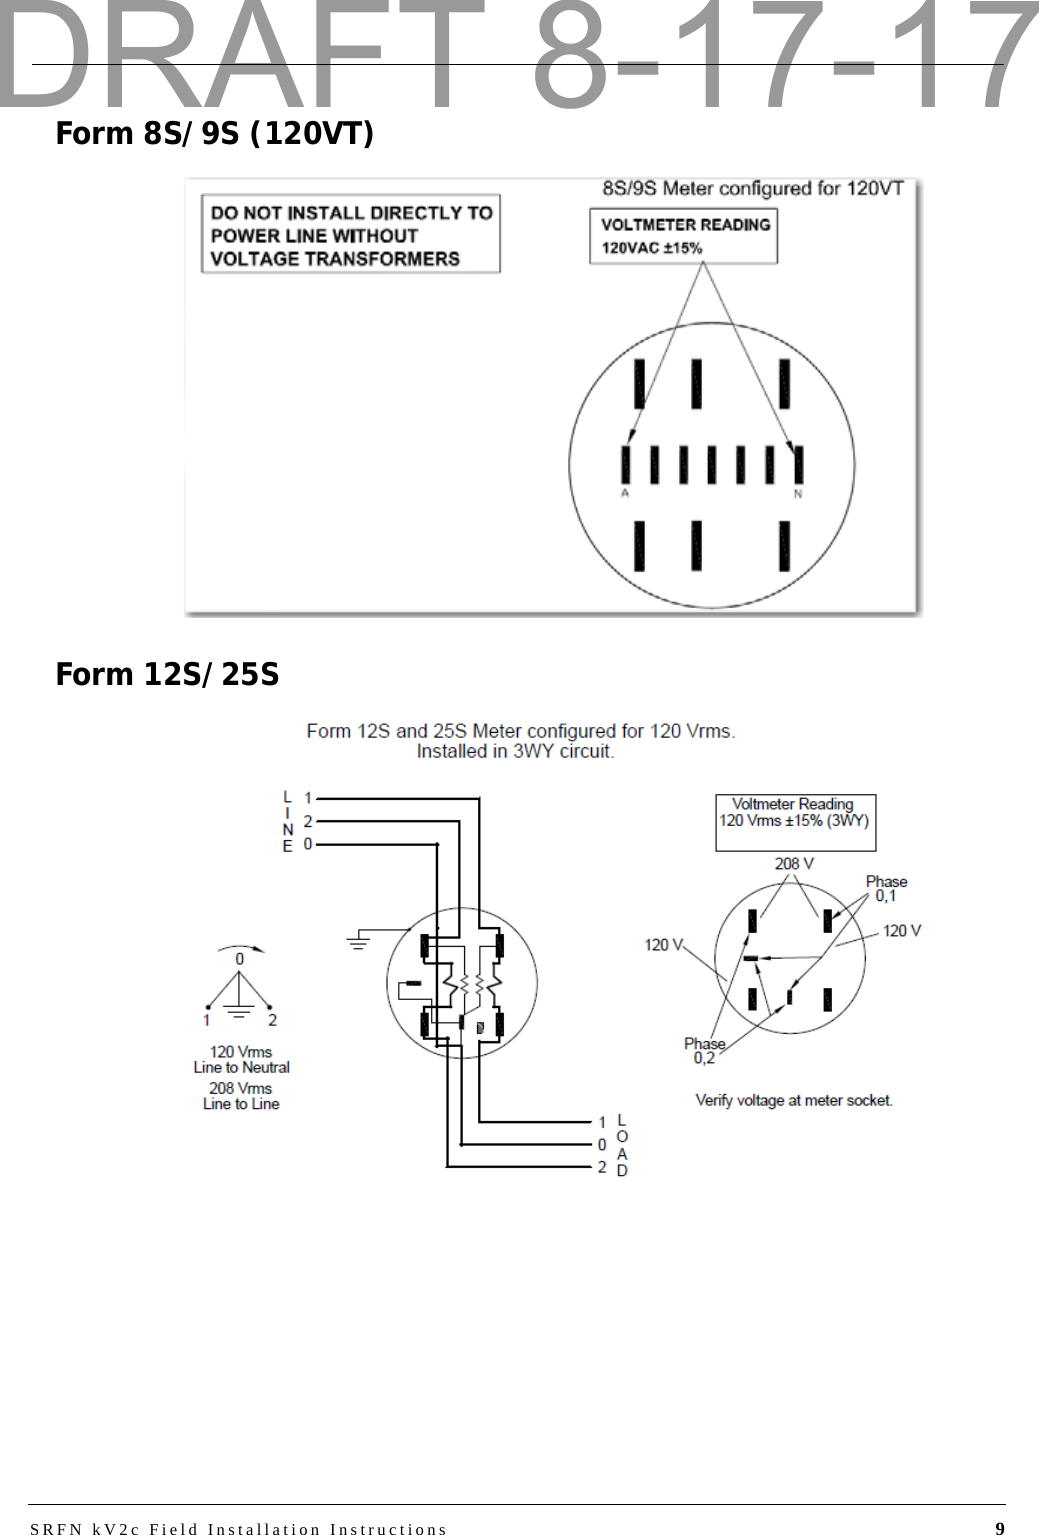 SRFN kV2c Field Installation Instructions 9Form 8S/9S (120VT)Form 12S/25SDRAFT 8-17-17